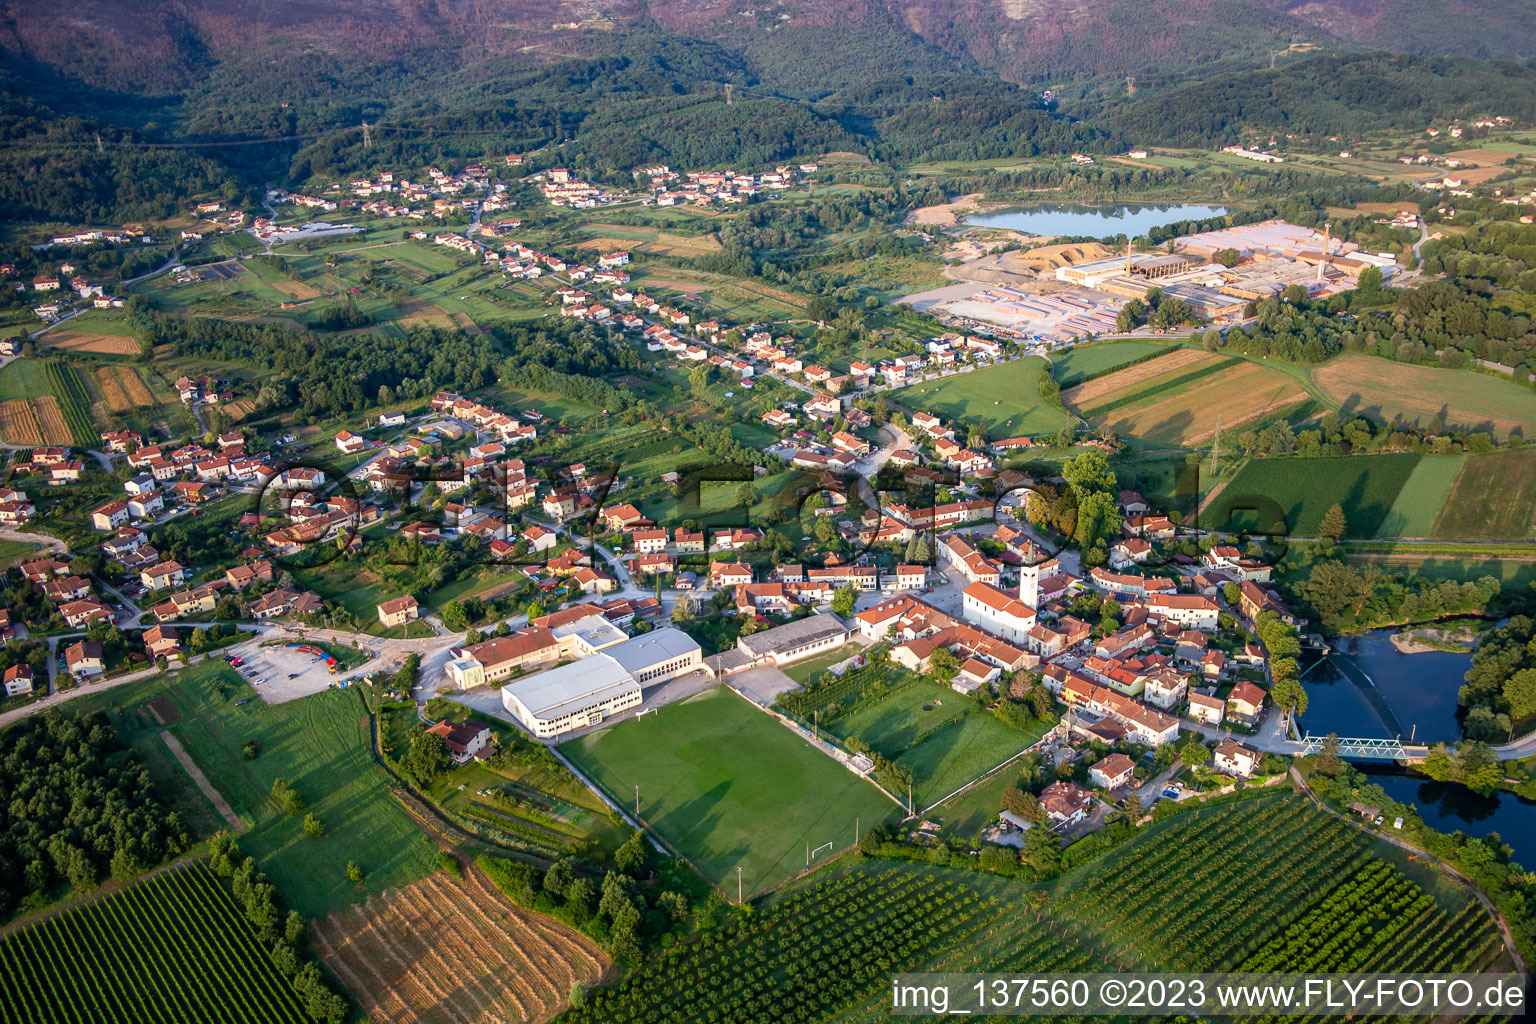 Luftbild von Ortsteil Renče in Renče-Vogrsko, Slowenien